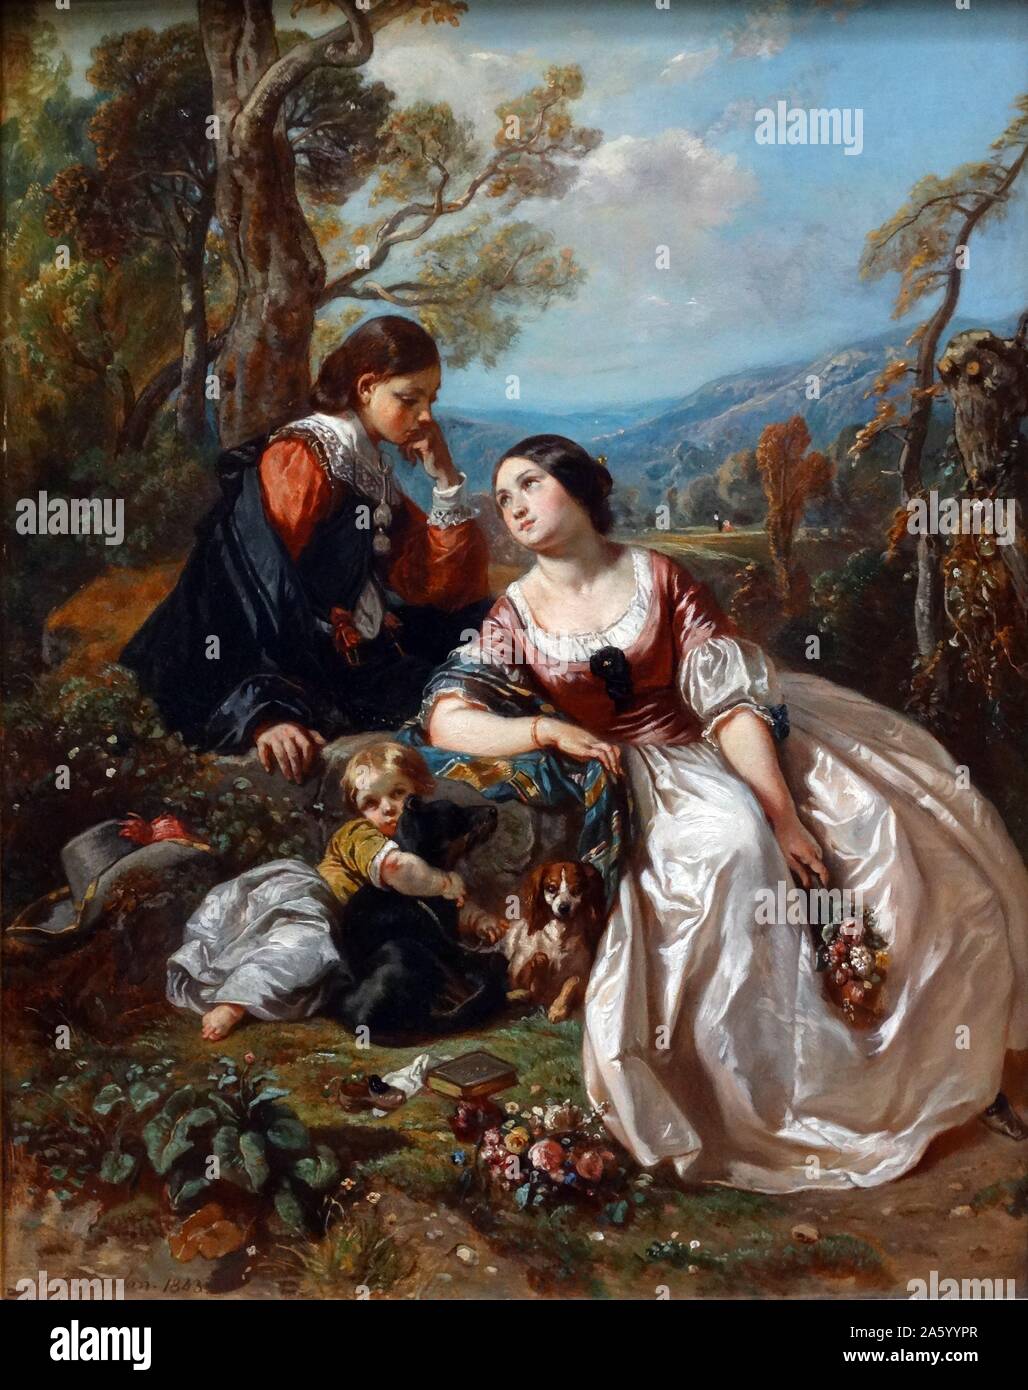 Gemälde mit dem Titel "A Sentimental Gespräch" von Camille Roqueplan (1800-1855)-Französisch-romantischen Maler von Landschaften, Genre und historische Szenen. Datierte 1835 Stockfoto